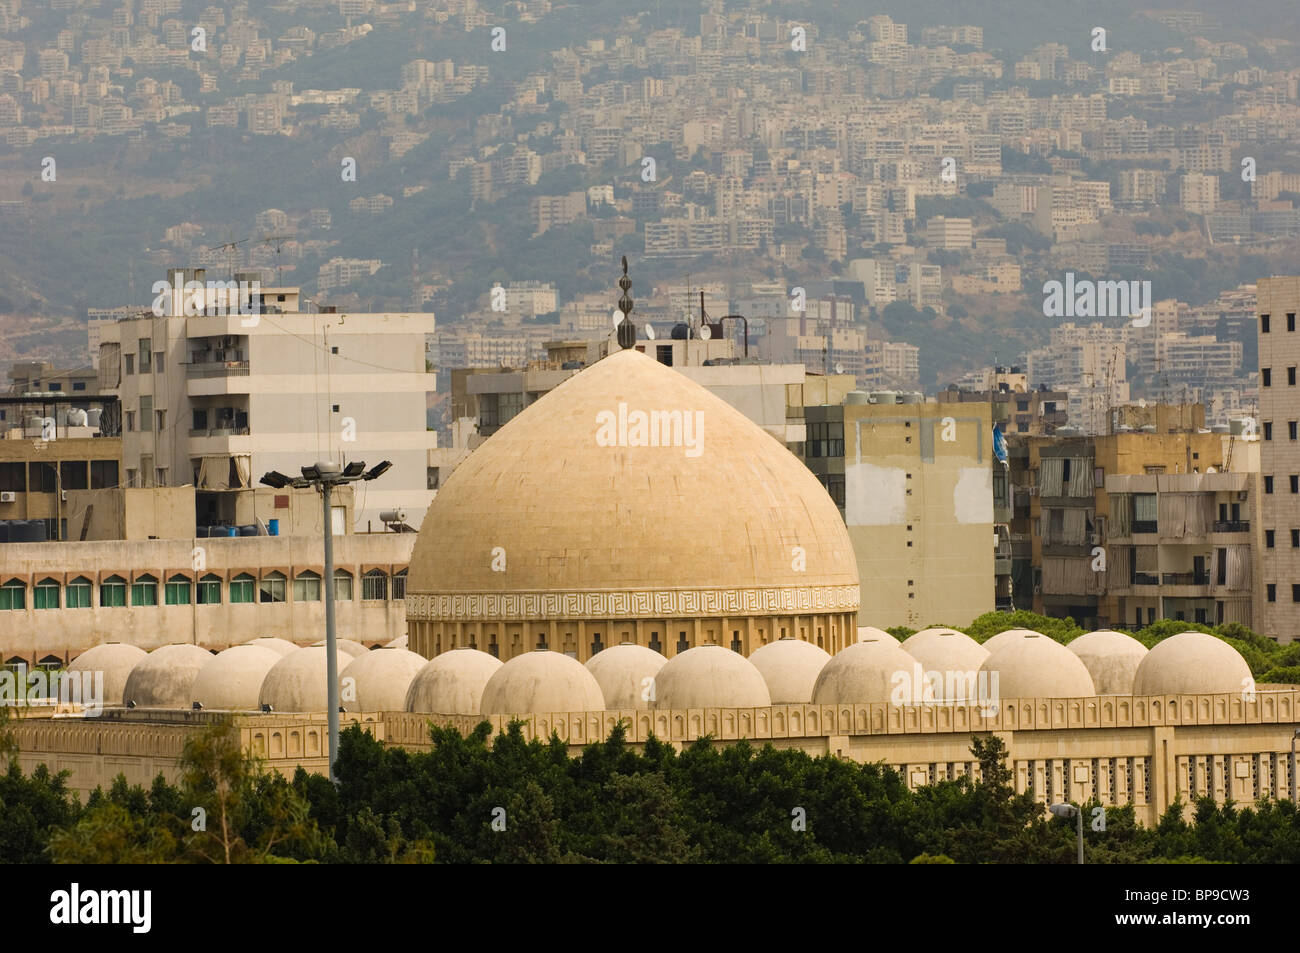 La mosquée bleue à Beyrouth Liban Moyen-Orient Asie Banque D'Images